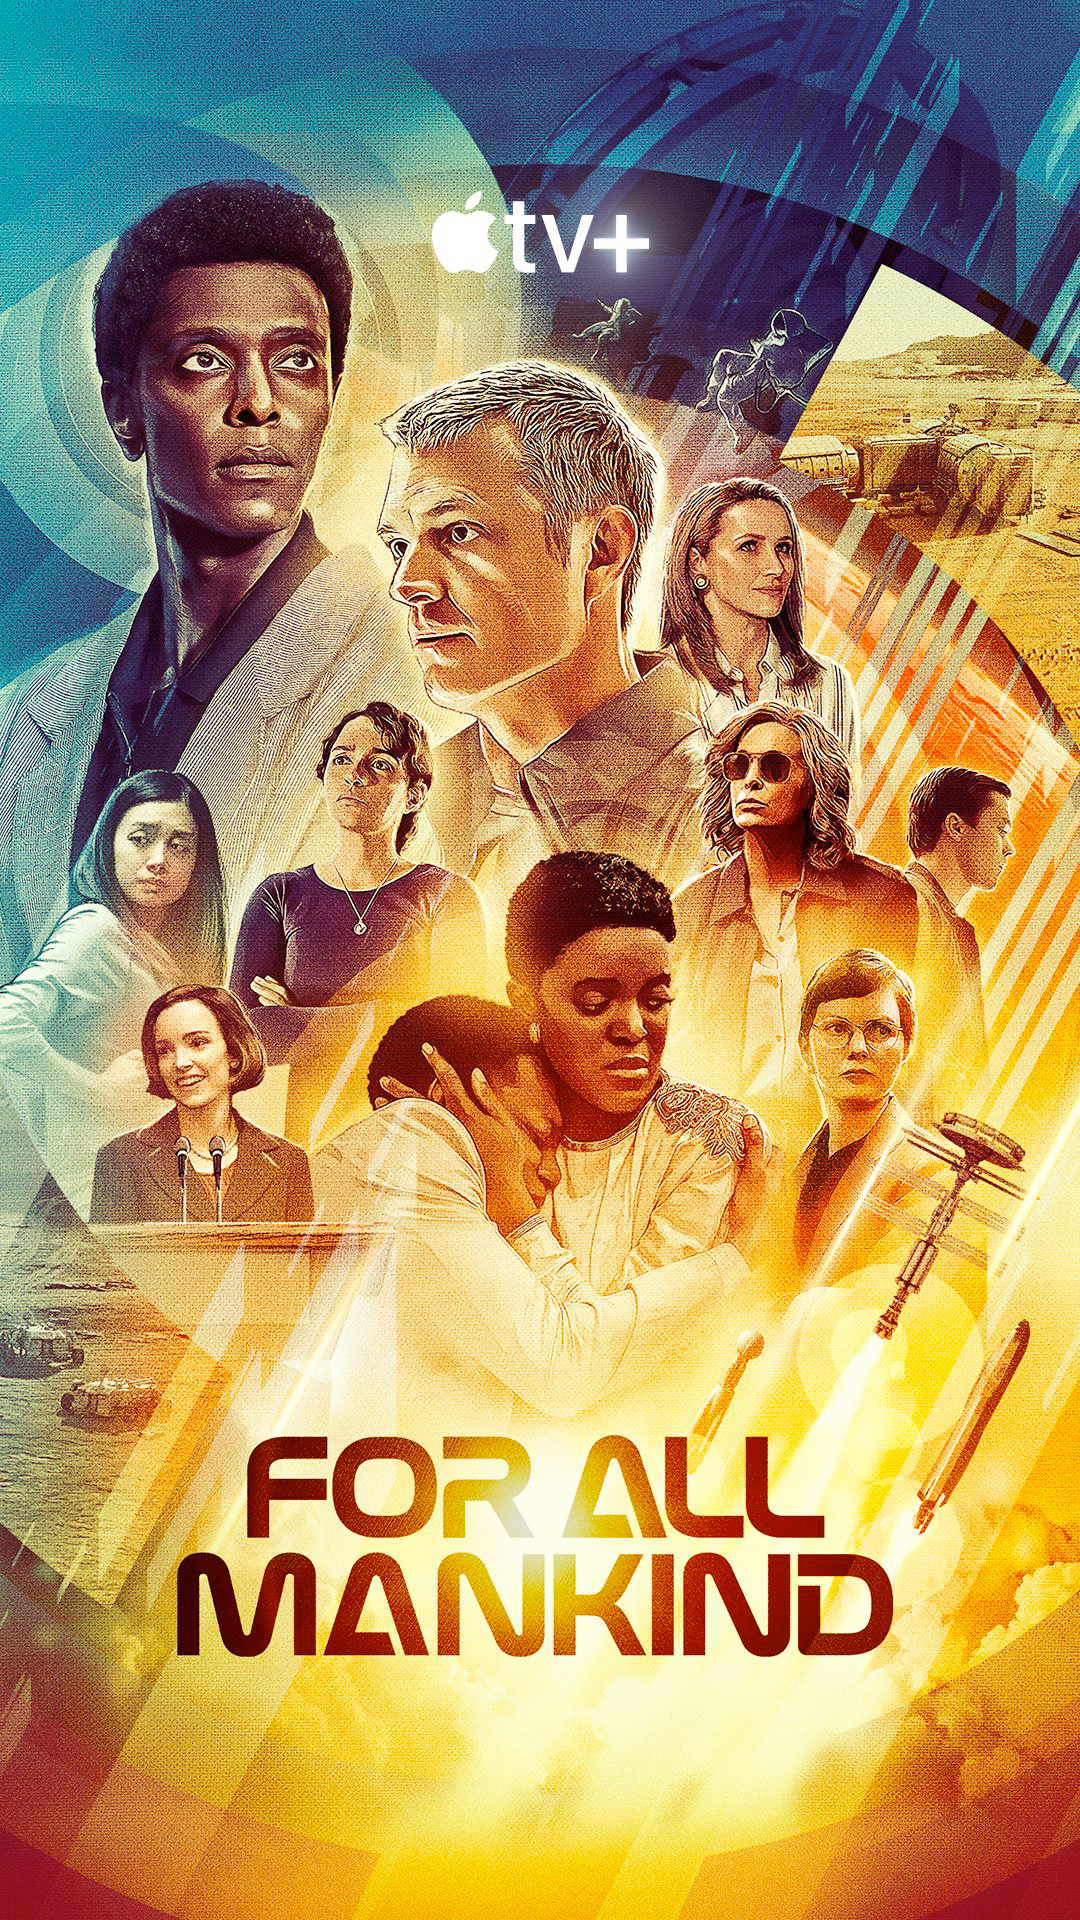 Afiche exclusivo de la Comic Con de San Diego con el elenco de "Para toda la humanidad" como aparecen en la tercera temporada de la serie.